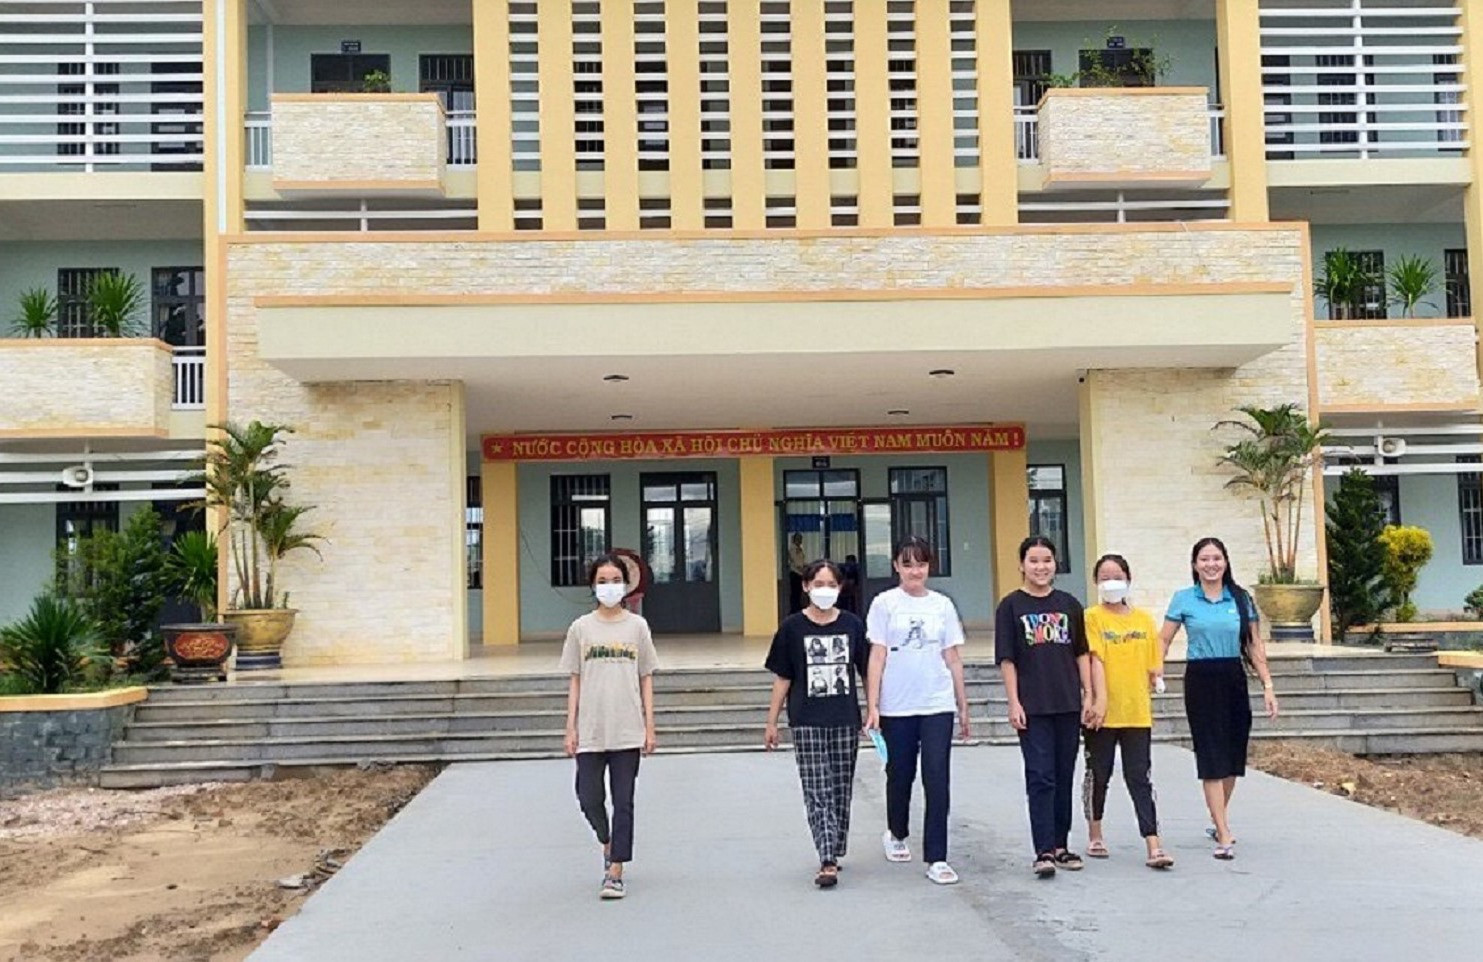 Trường THCS Nguyễn Bỉnh Khiêm (xã Duy Vinh) được đầu tư xây dựng khang trang, chuẩn bị cho năm học mới. Ảnh: T.N